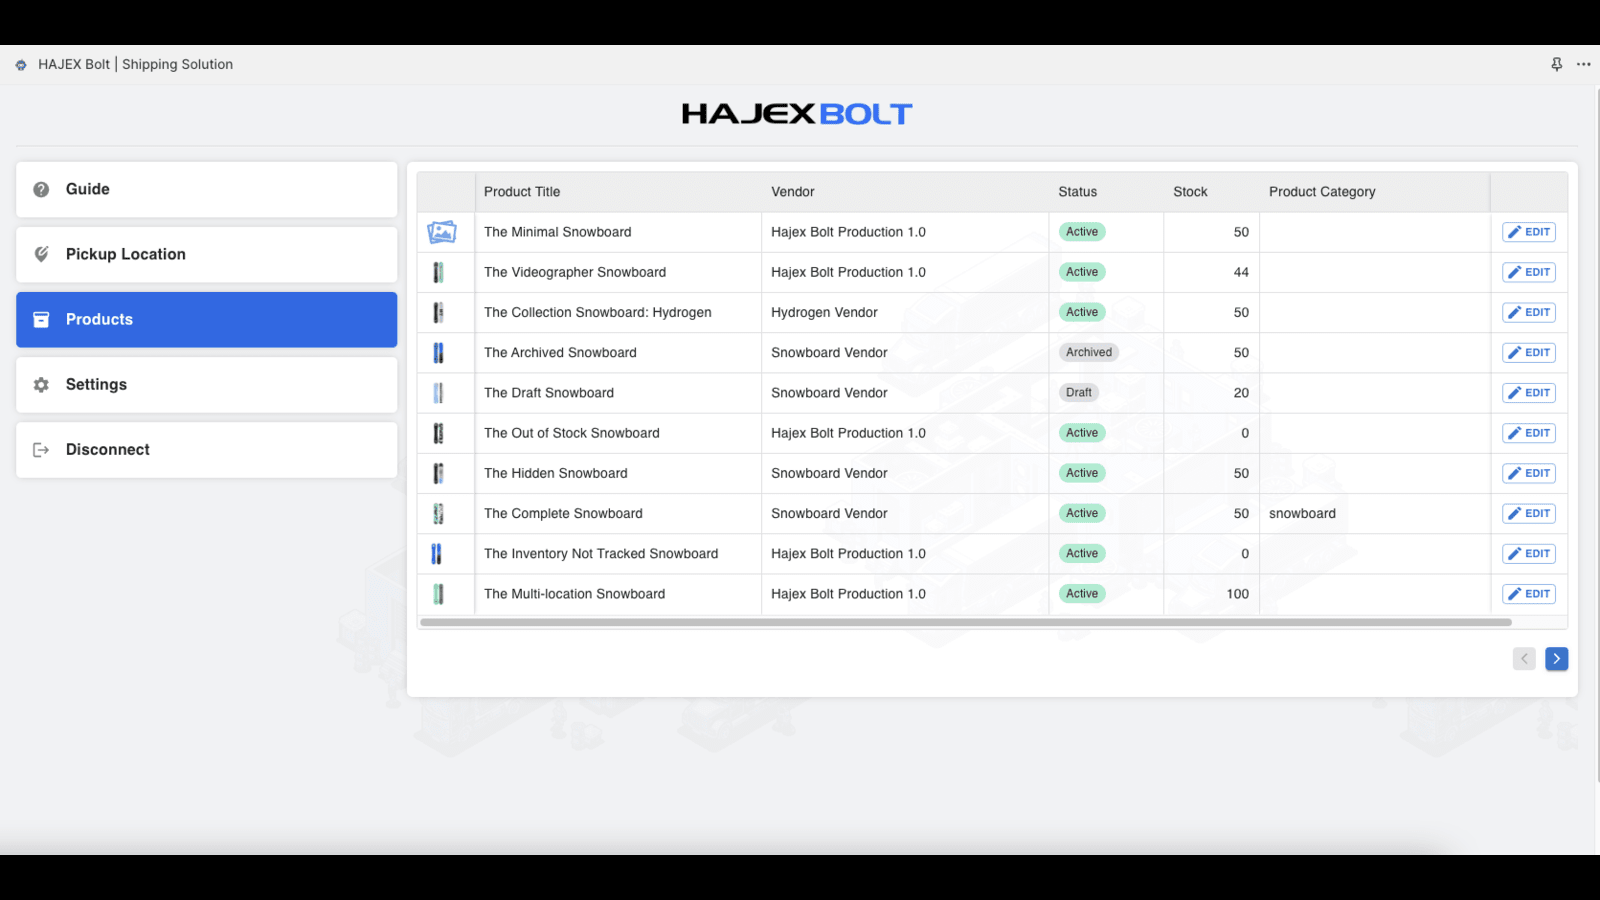 Liste des produits dans l'application HajexBolt